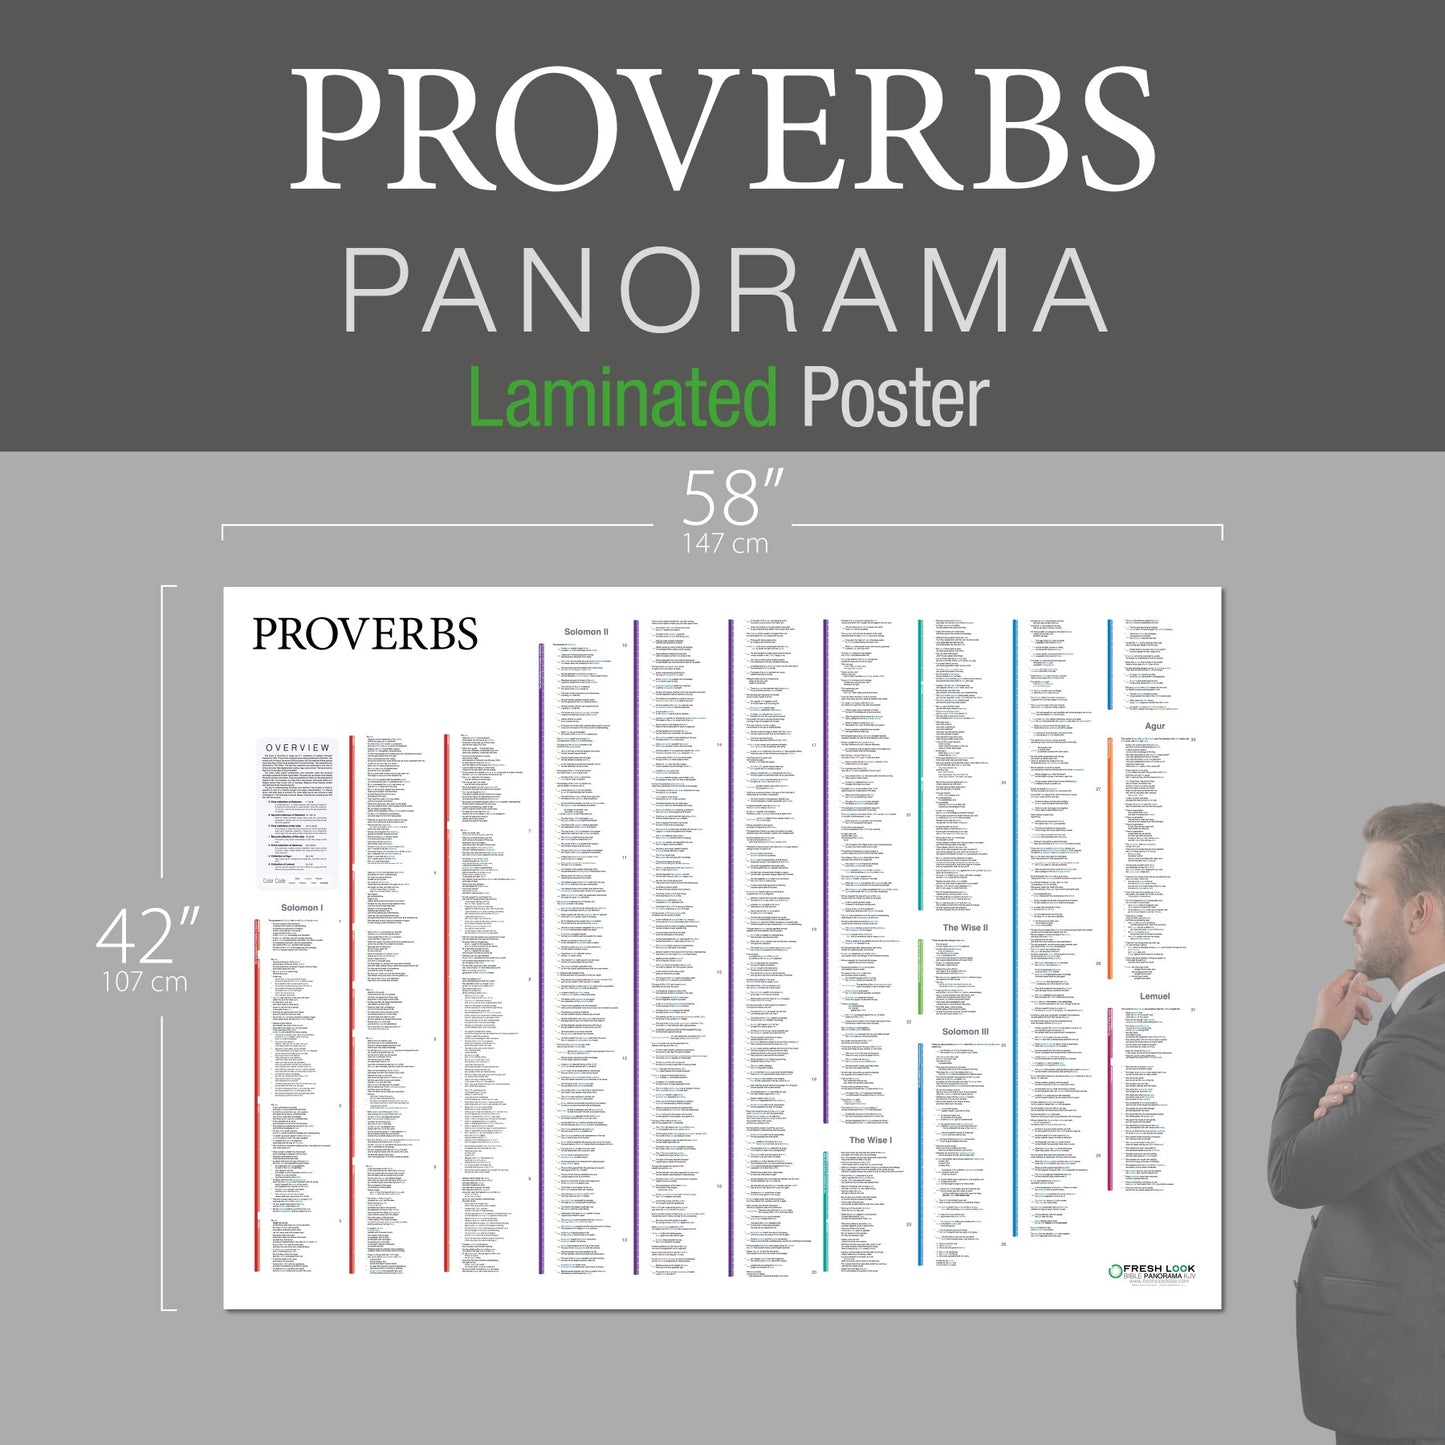 Proverbs Panorama Laminated